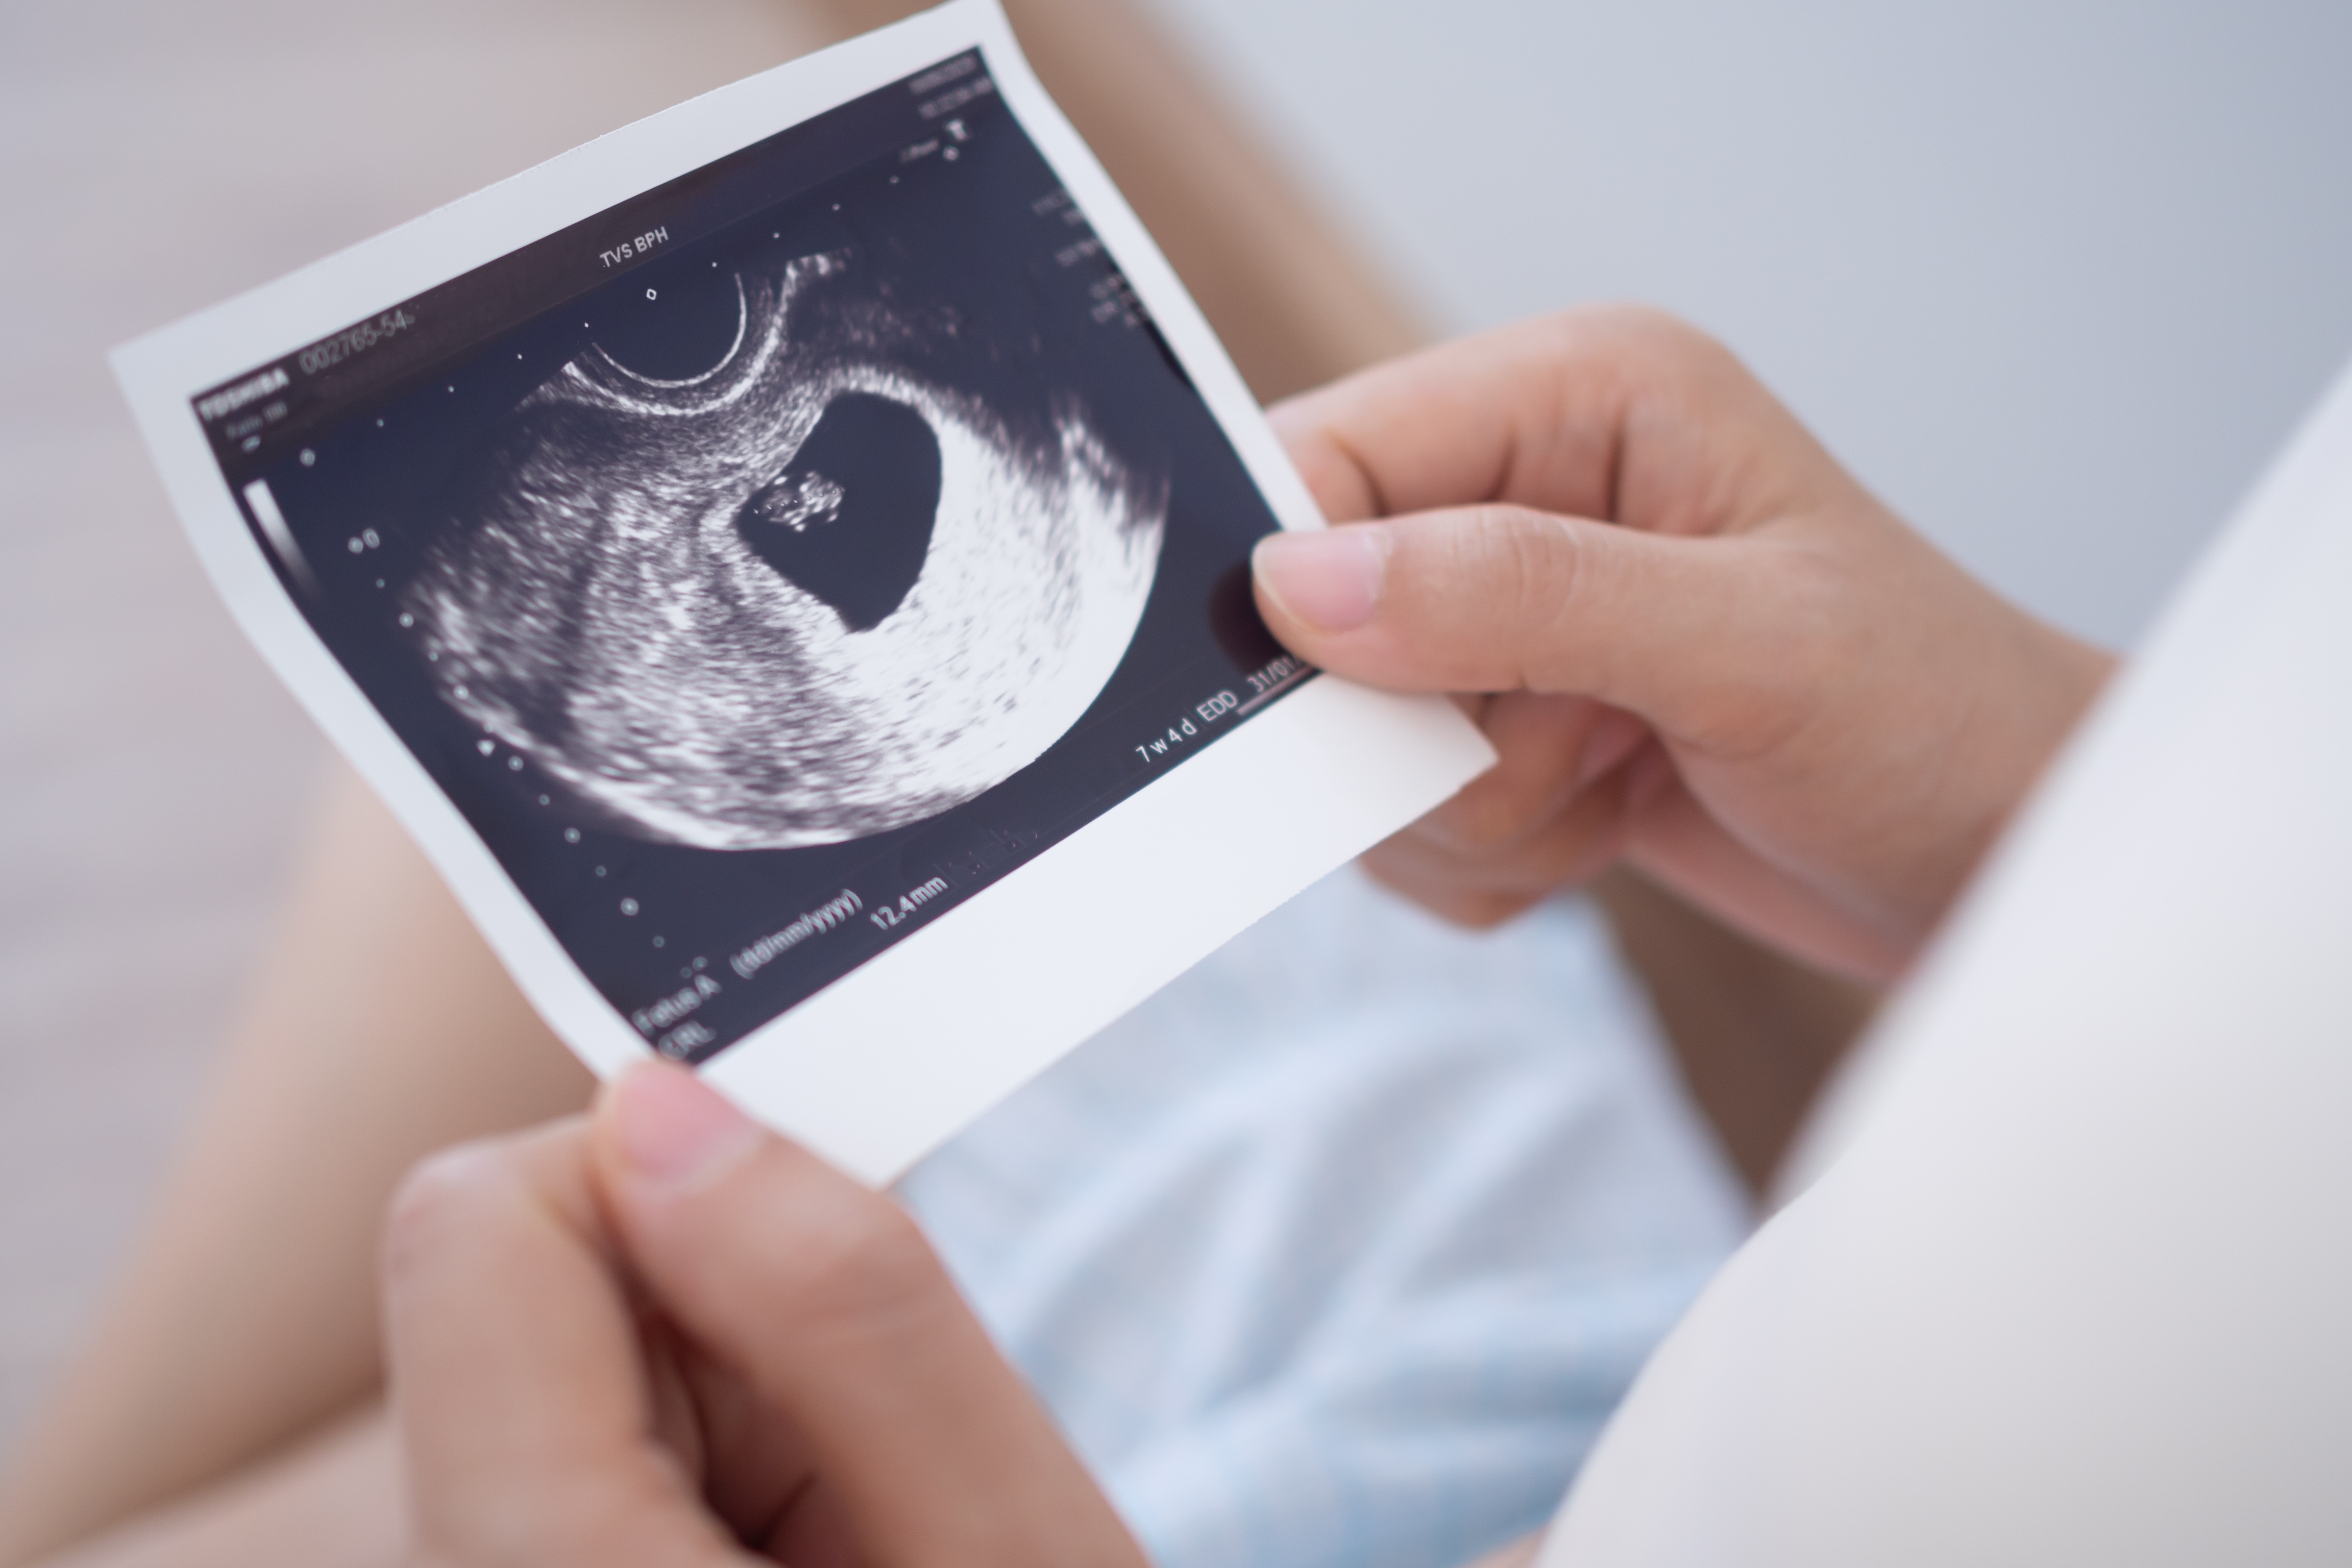 Femme enceinte regardant une photo d'échographie du fœtus | Source : Shutterstock